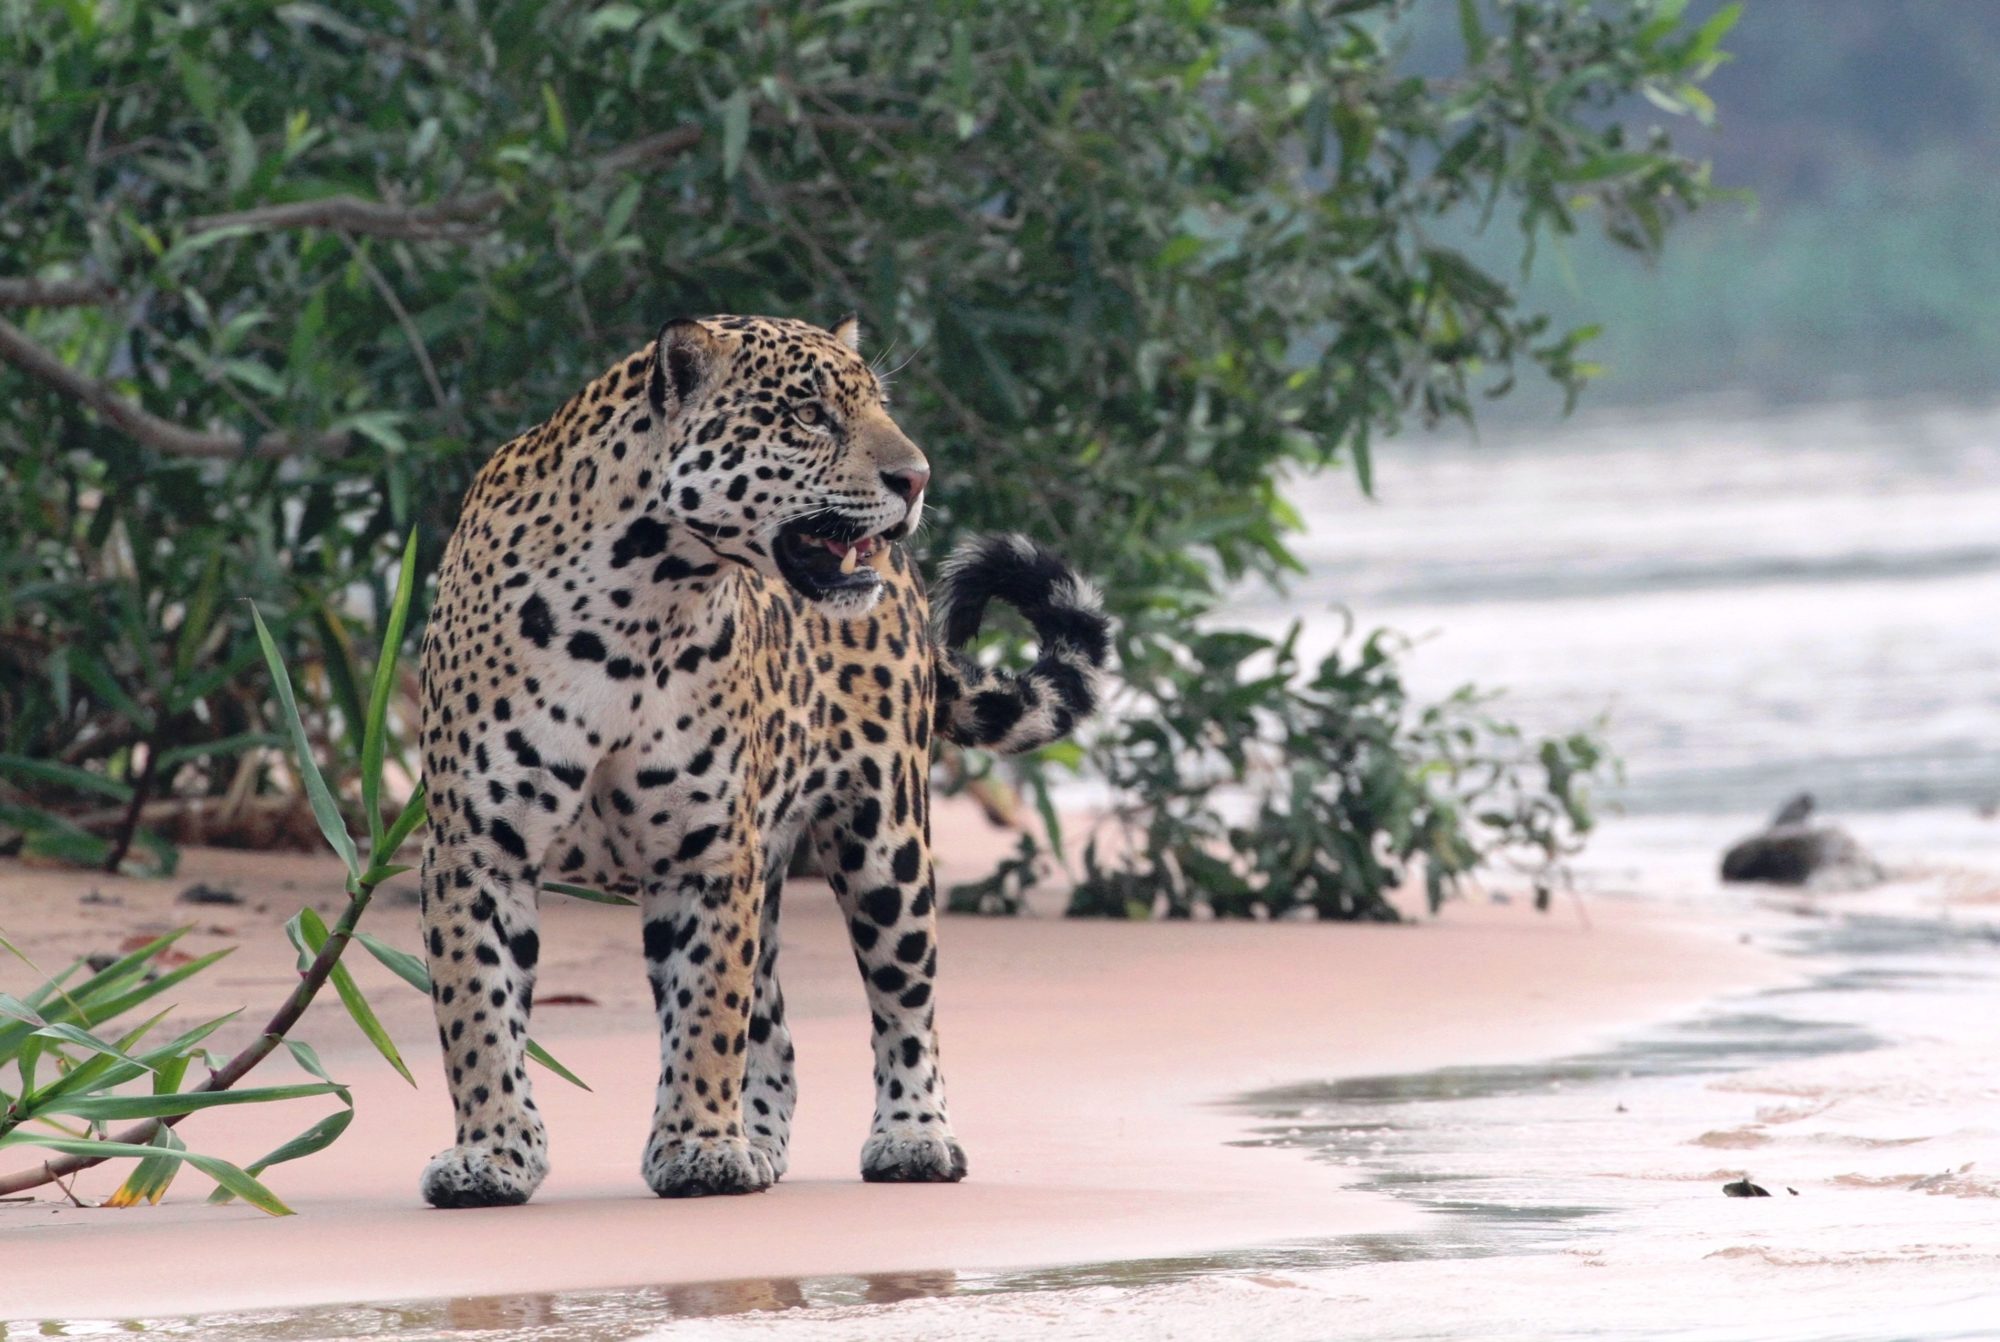 jaguar in the Pantanal